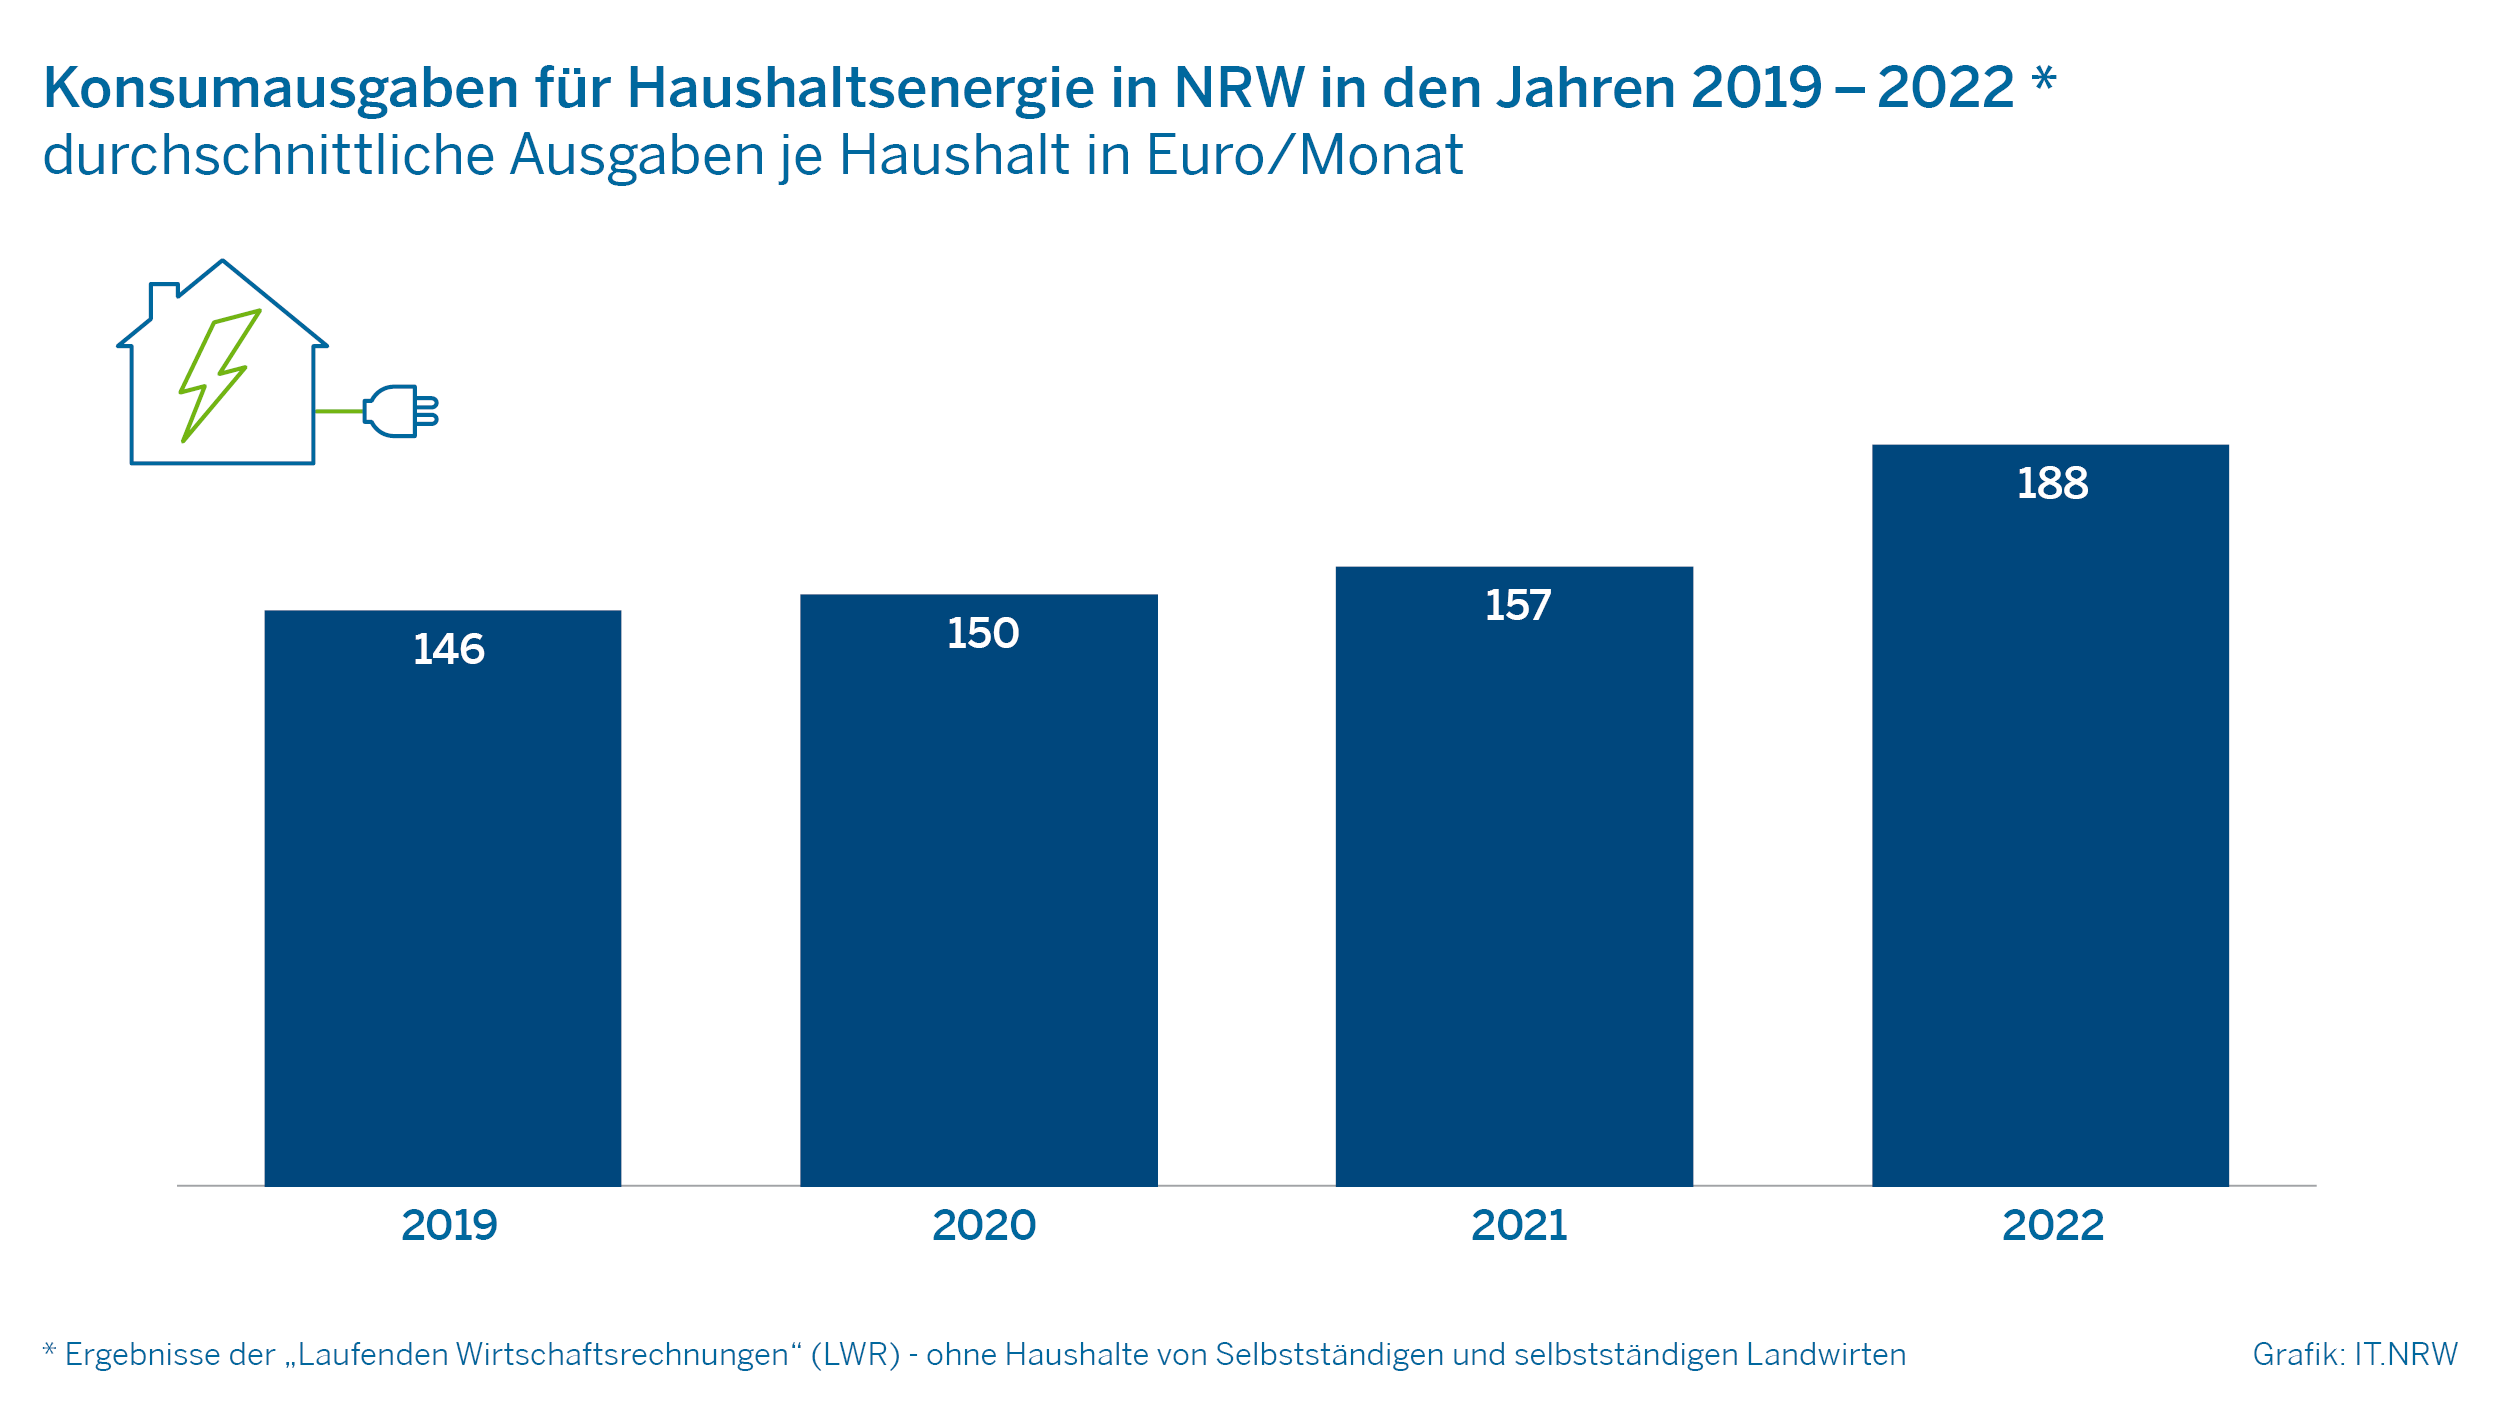 Konsumausgaben für Haushaltsenergie in NRW in den Jahren 2019 bis 2022